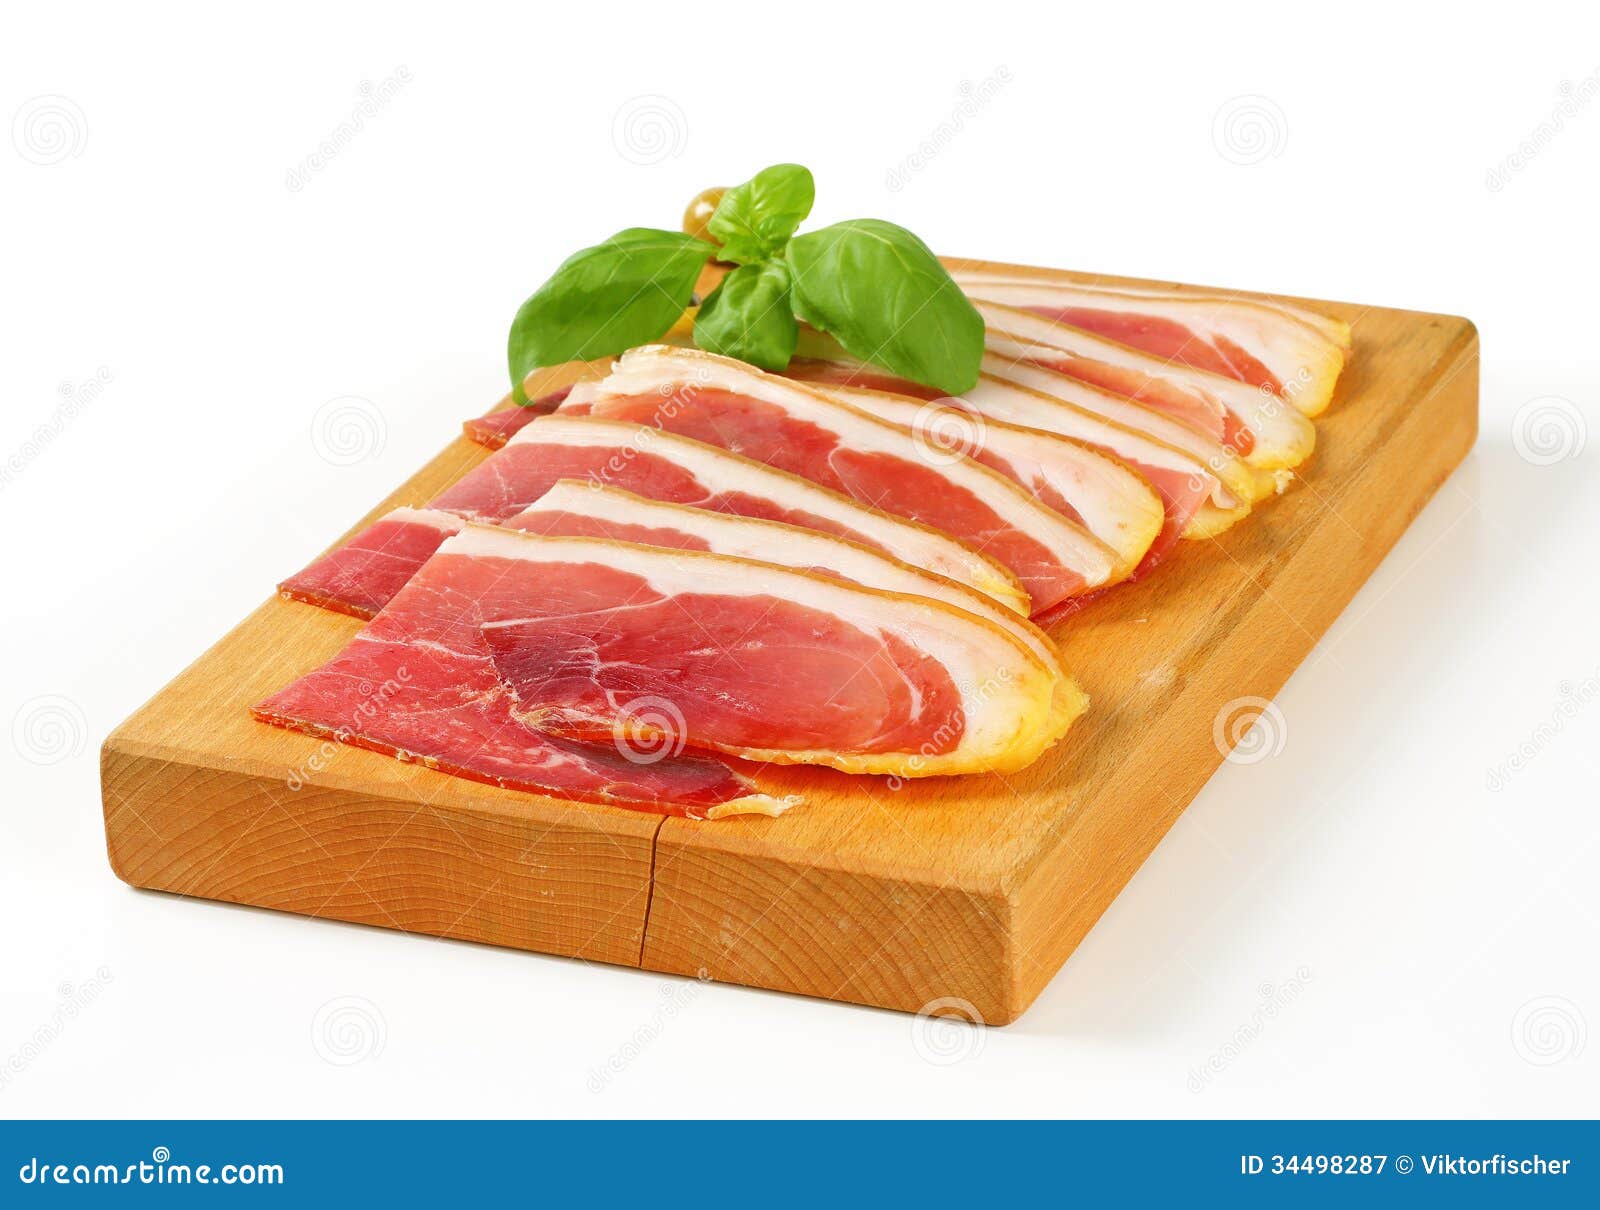 sliced prosciutto crudo